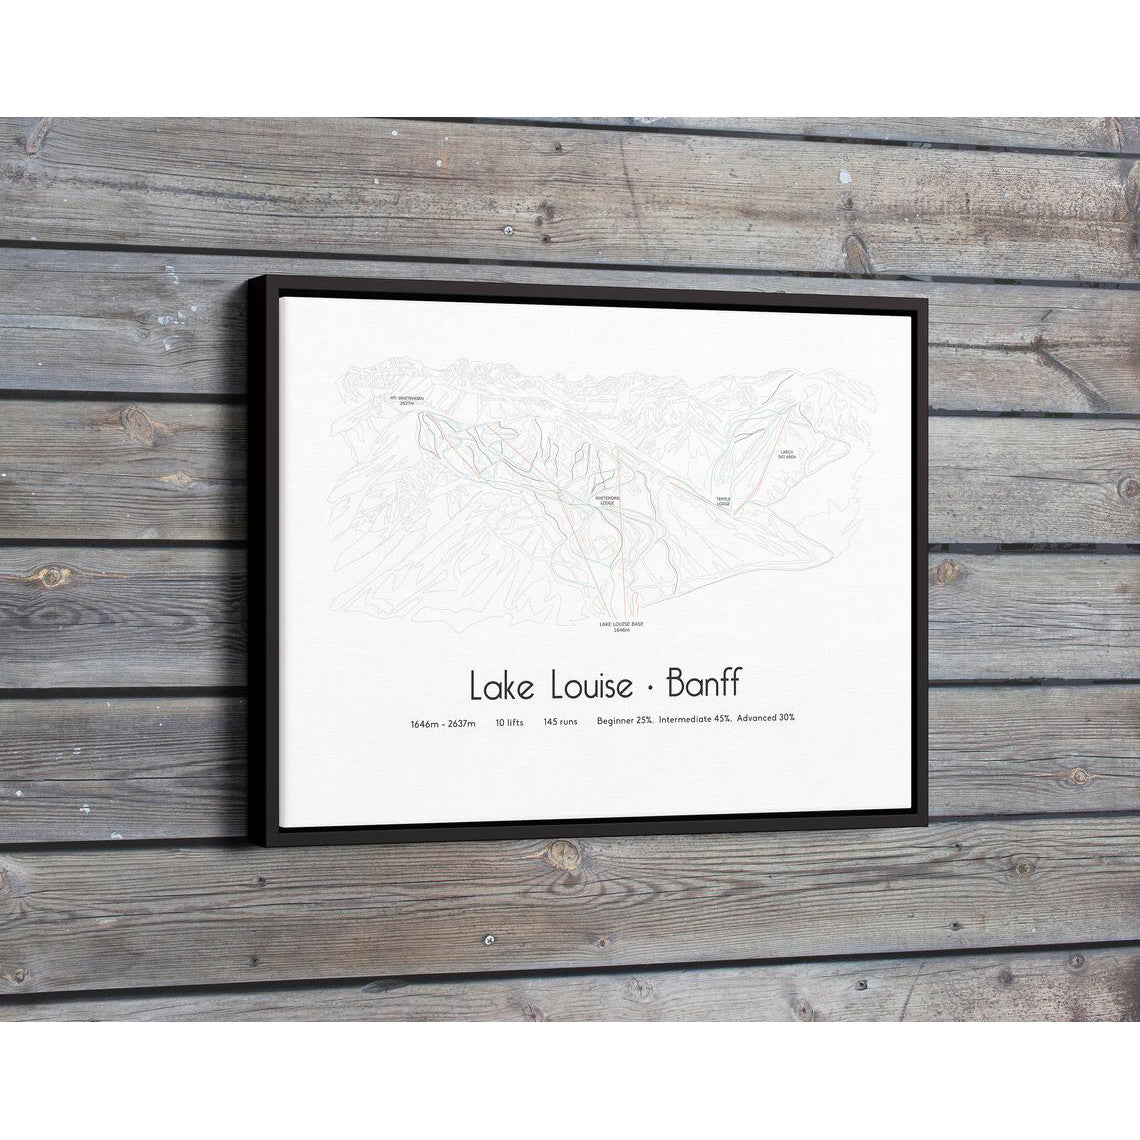 Lake Lousie Banff Piste Map Wall Print Poster | Backcountry Books